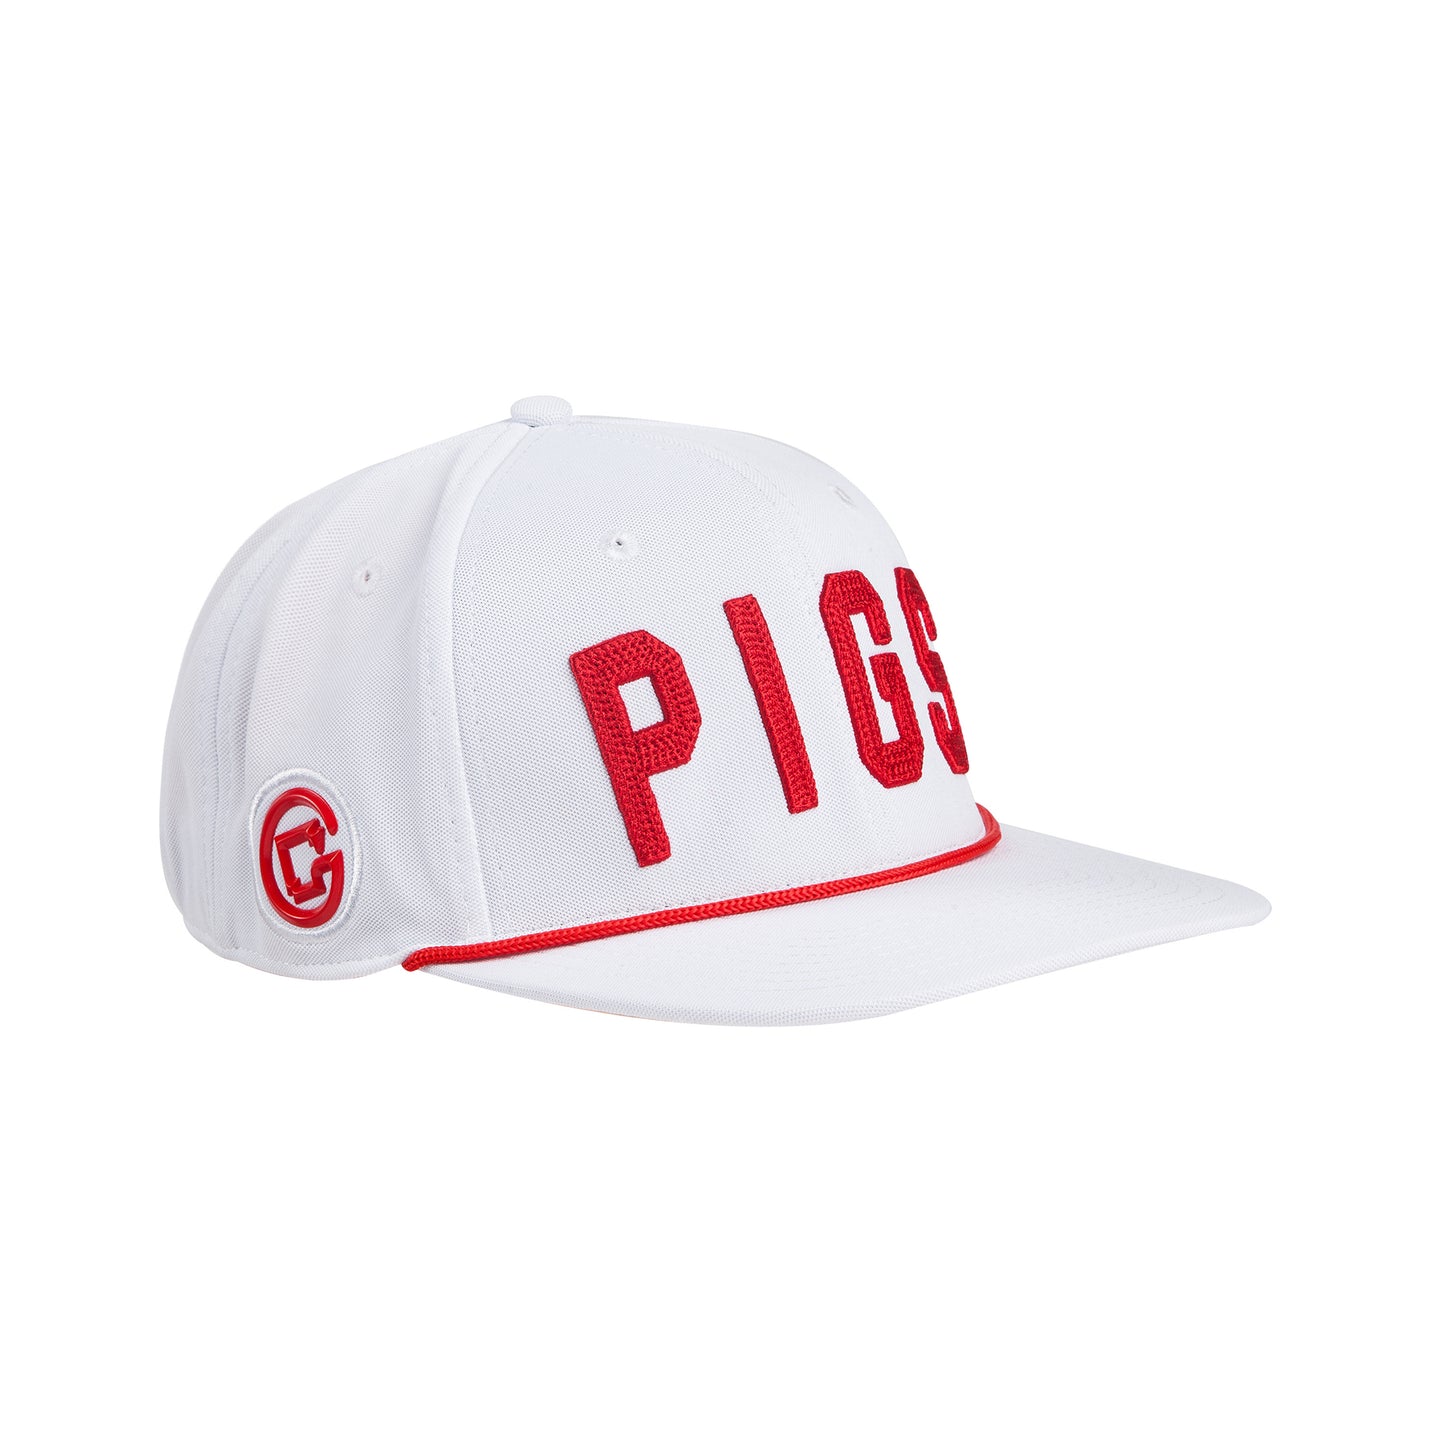 "OG" PIGS - White - Snapback - Flat Bill